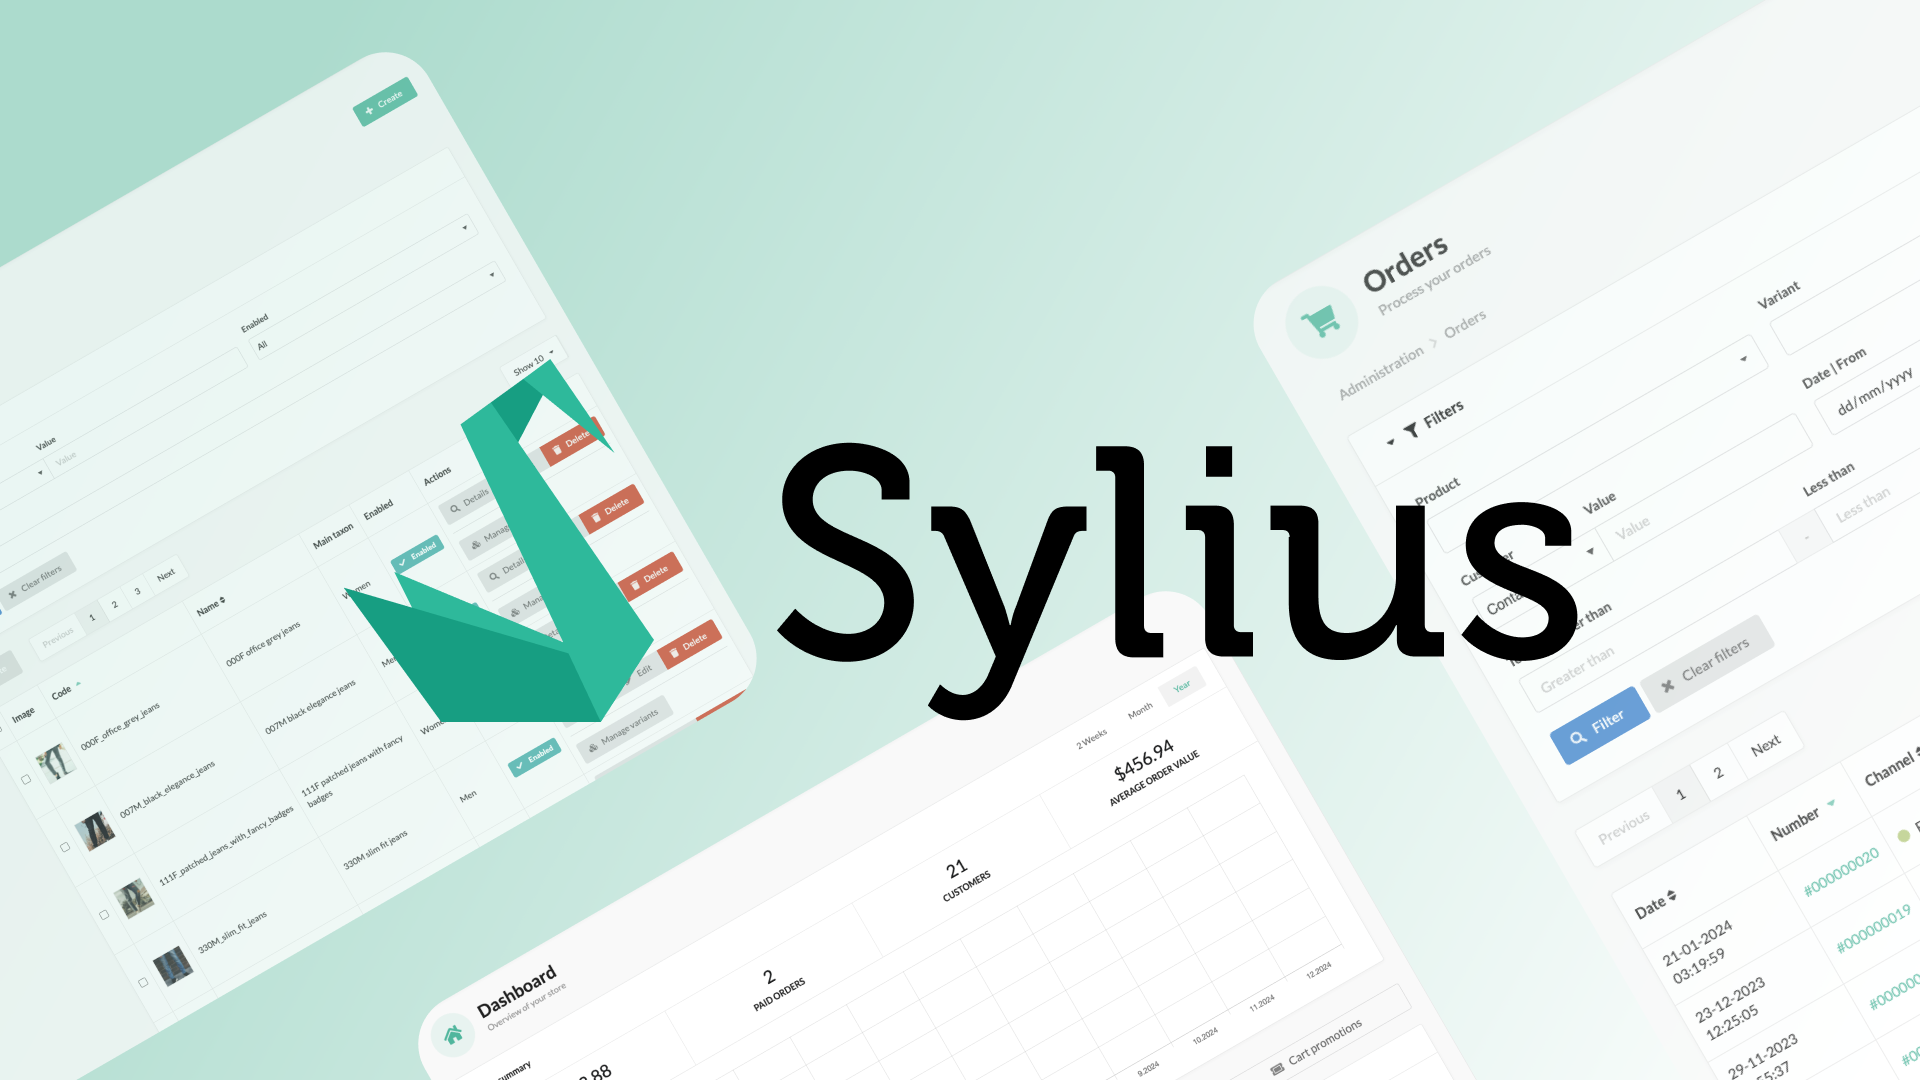 Image de présentation du framework Sylius avec le logo